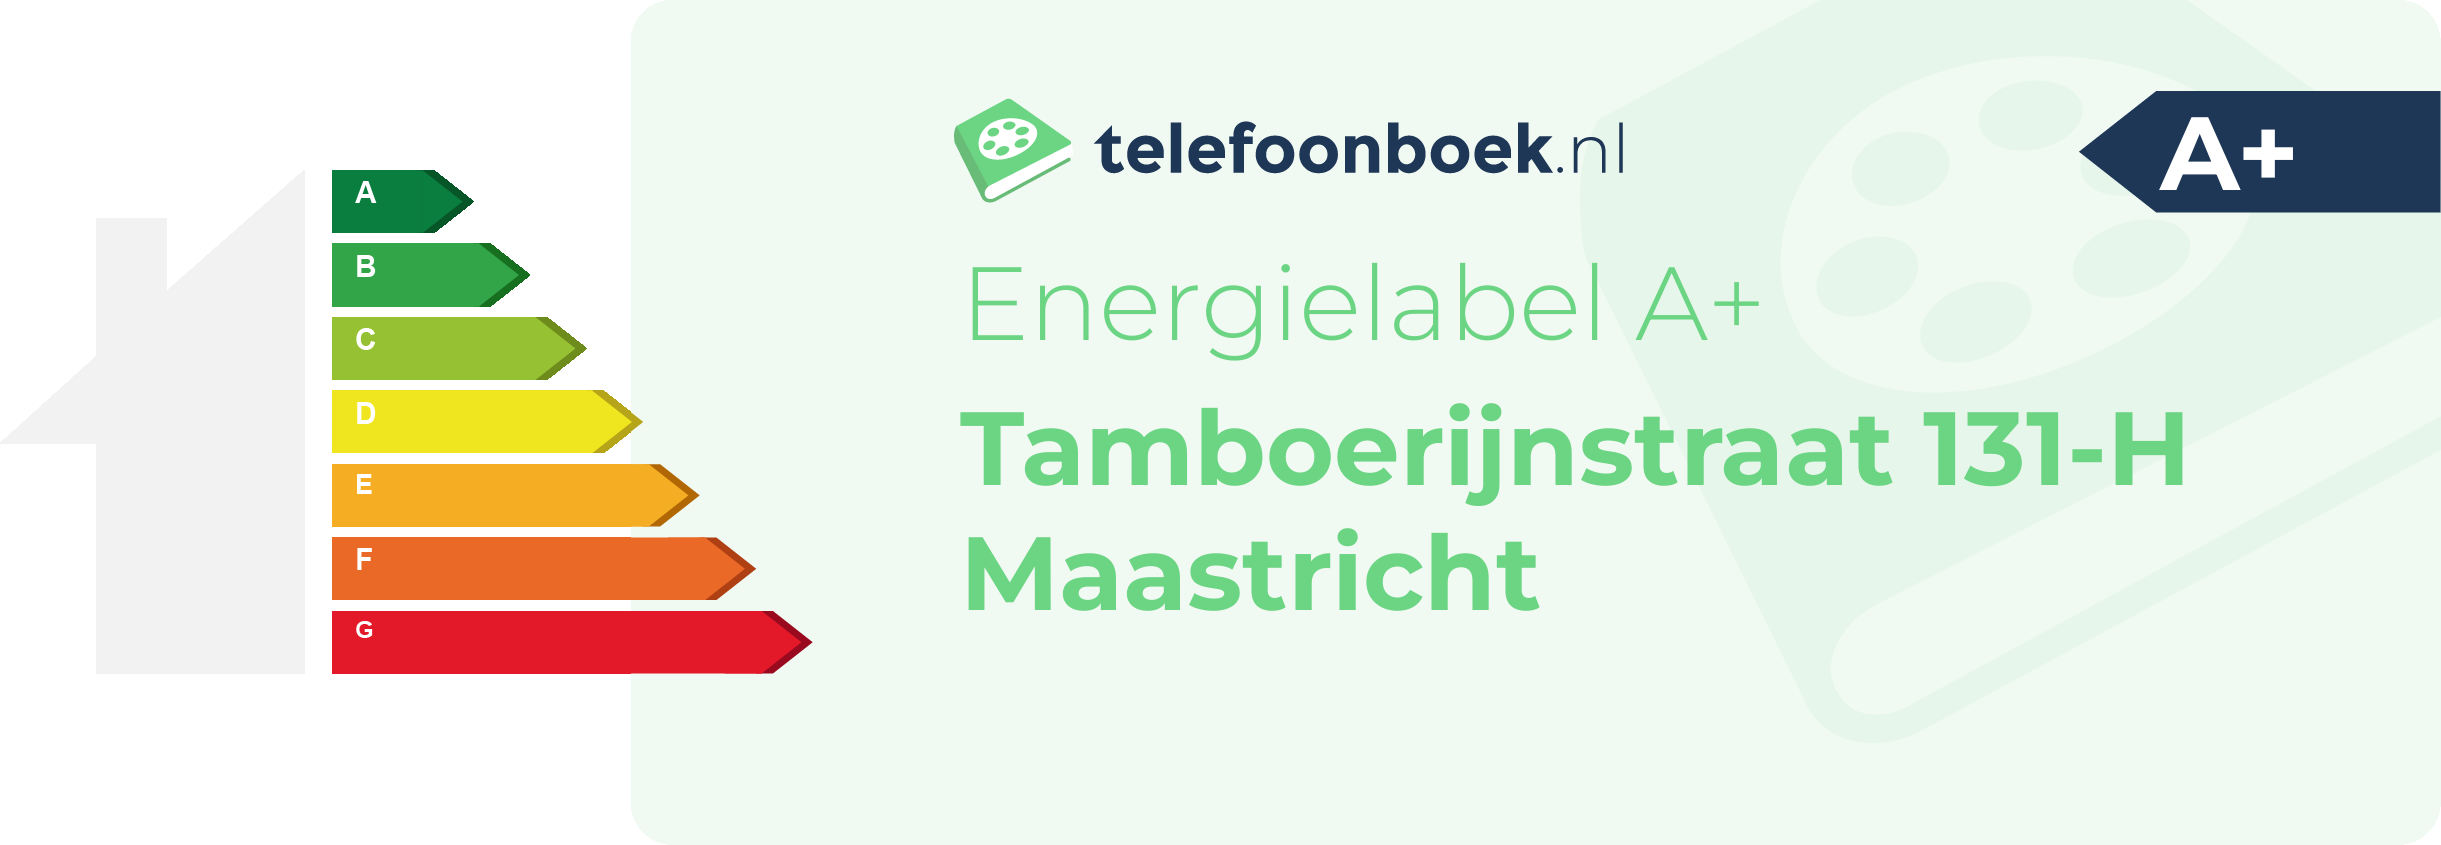 Energielabel Tamboerijnstraat 131-H Maastricht